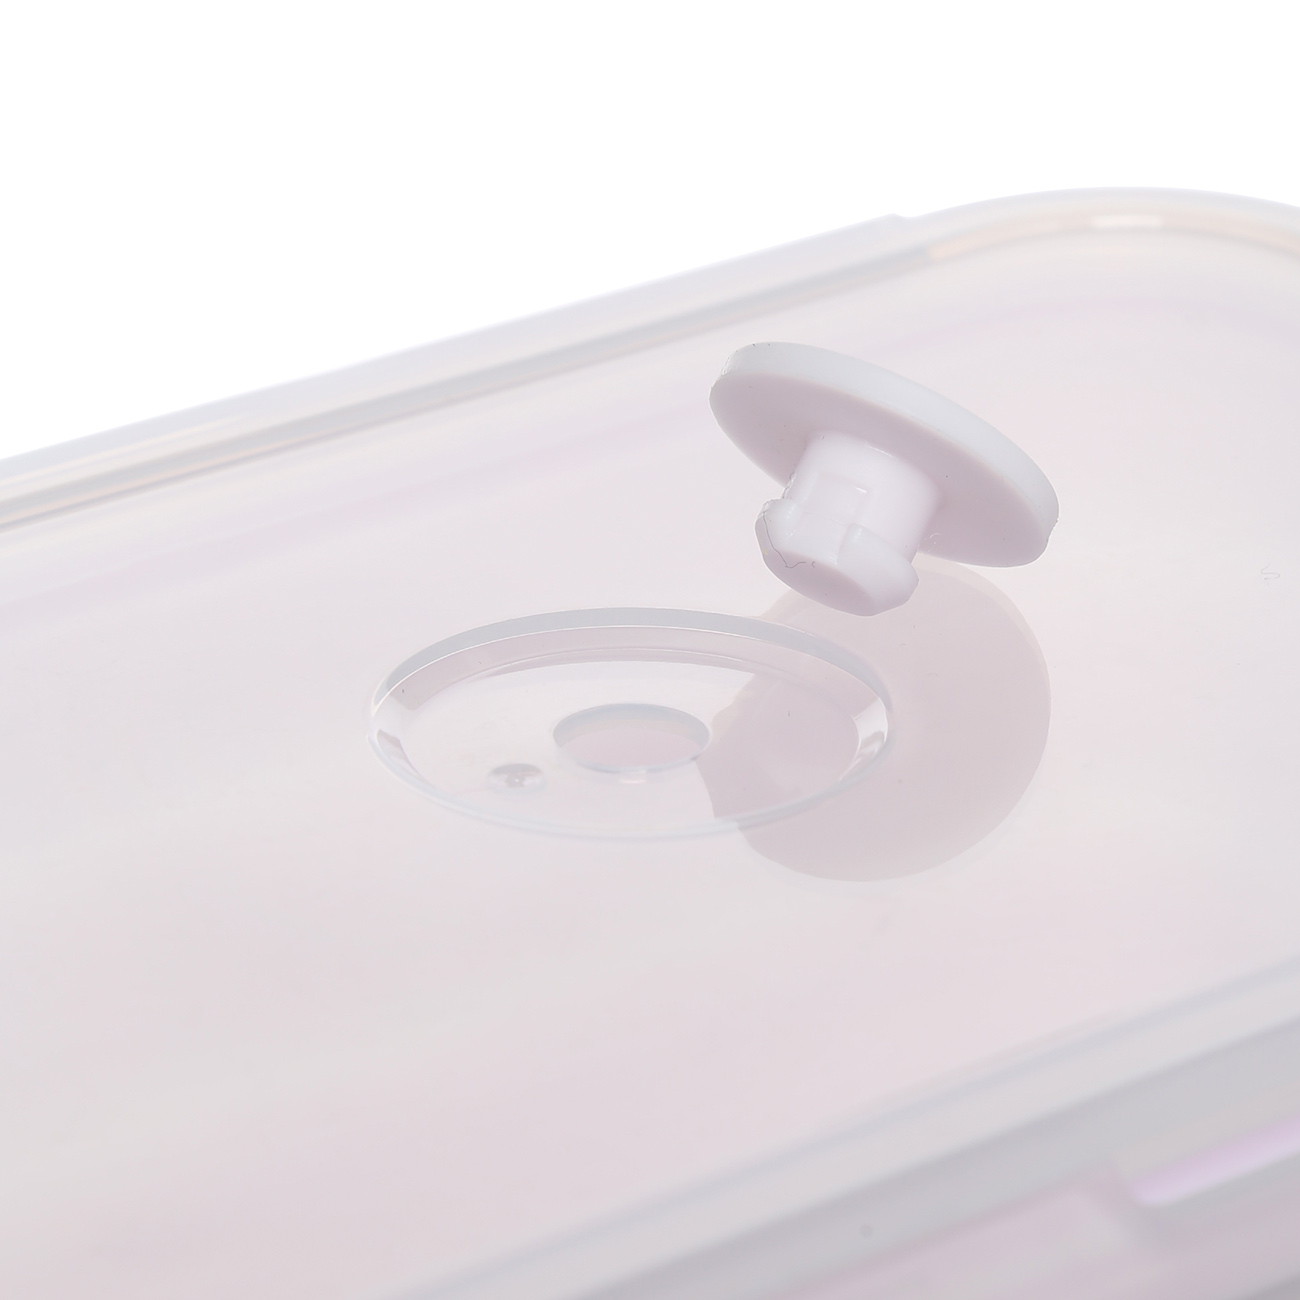 Контейнер, 1,2 л, складной, с клипсами, с клапаном, силикон/пластик, розовый, Portable изображение № 2